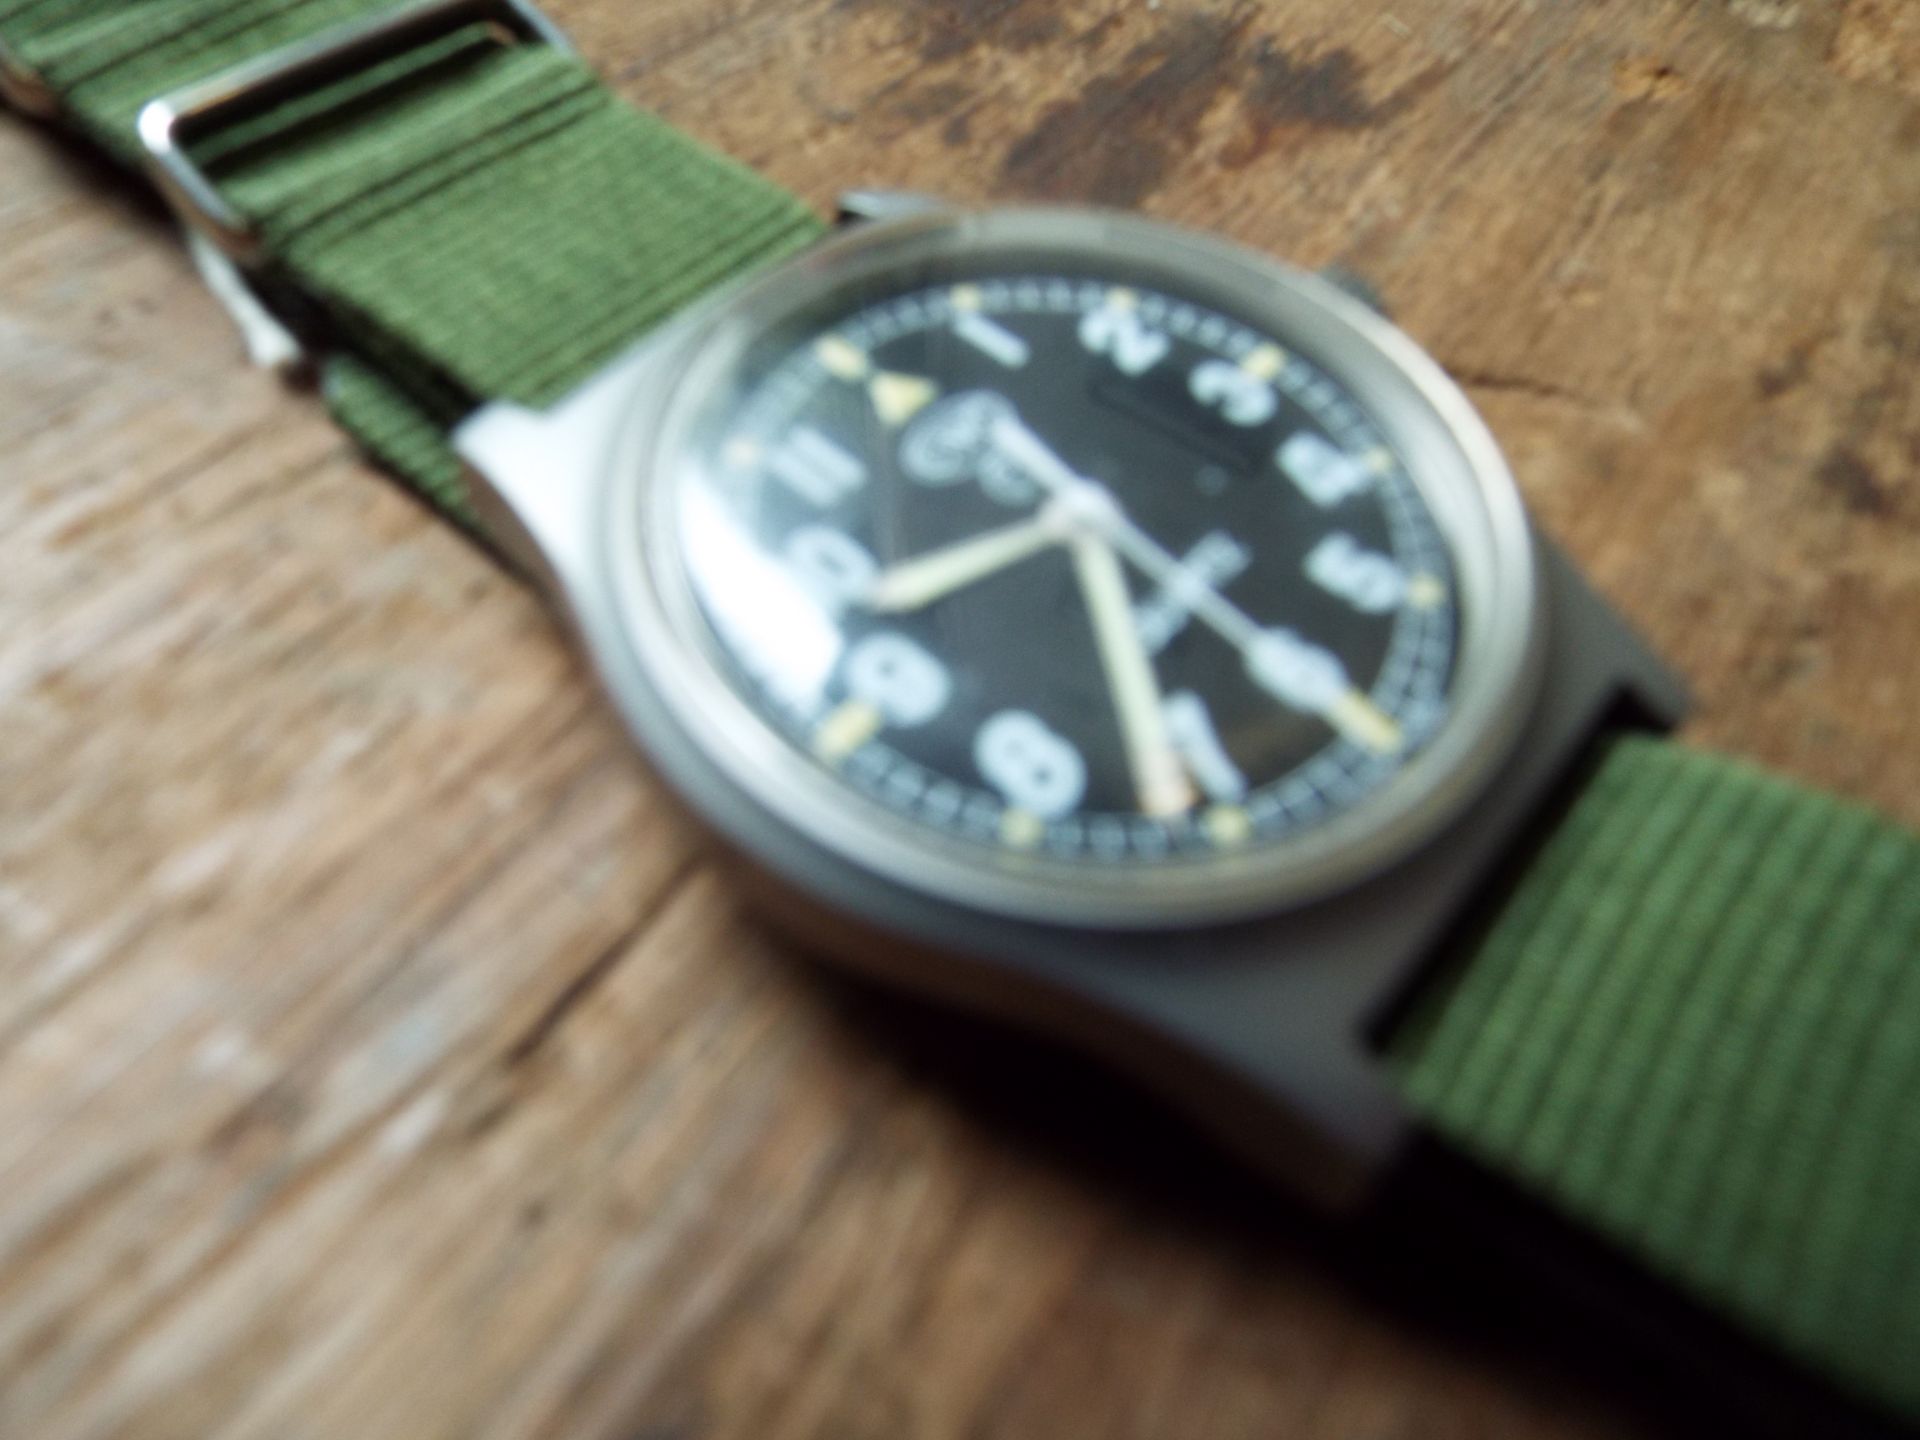 Very Rare Genuine British Army, Waterproof CWC quartz wrist watch - Image 4 of 6